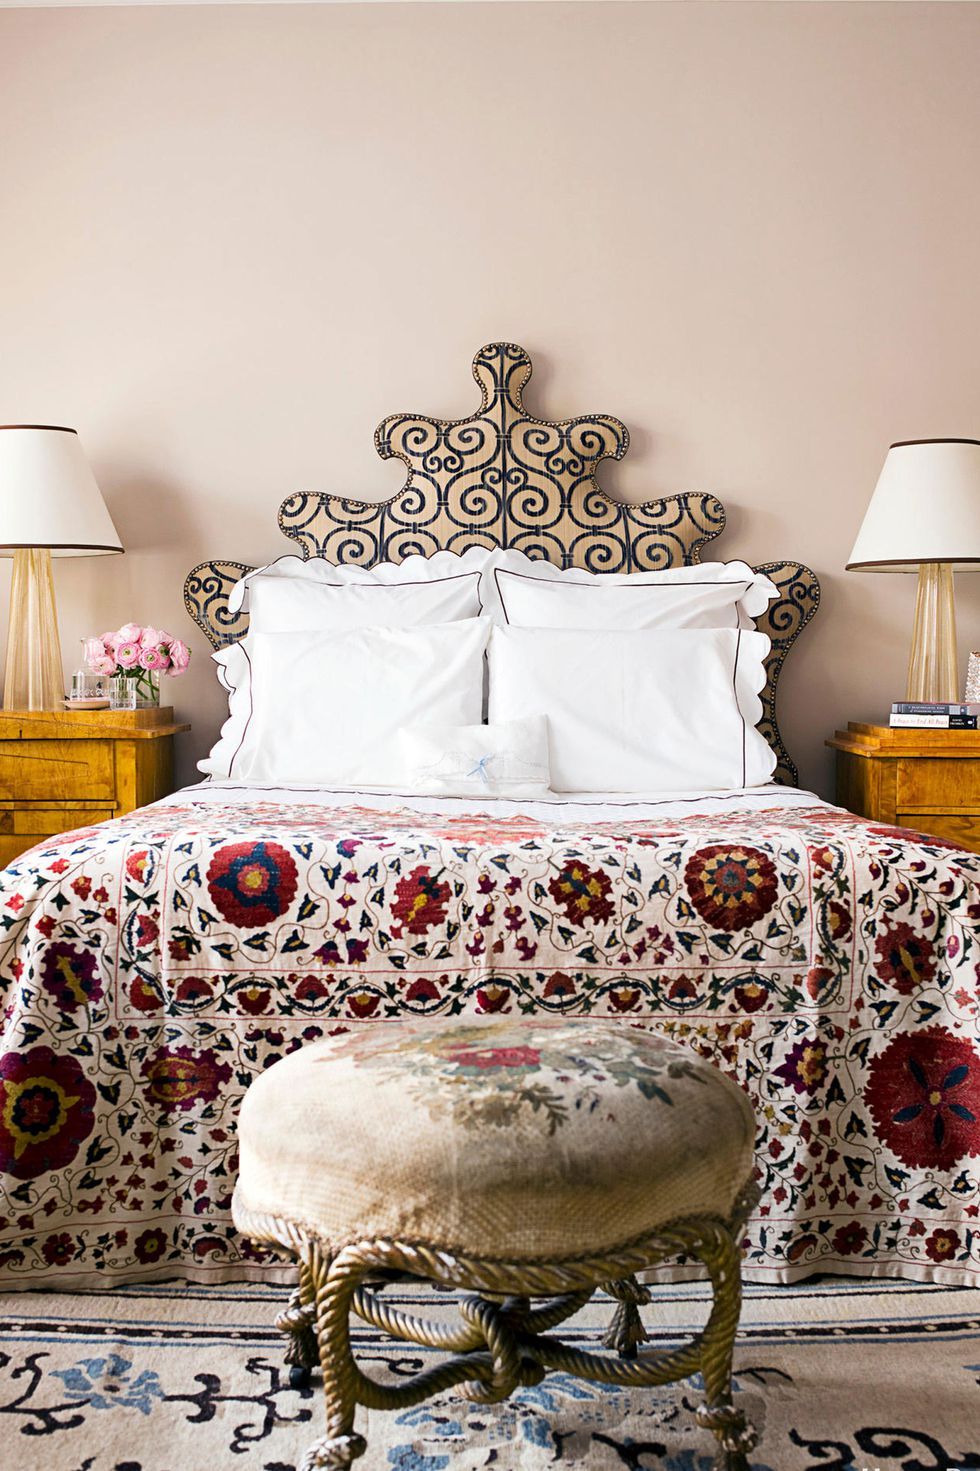 Hình ảnh một góc phòng ngủ với giường nệm cao, ga trải họa tiết hoa lá màu sắc